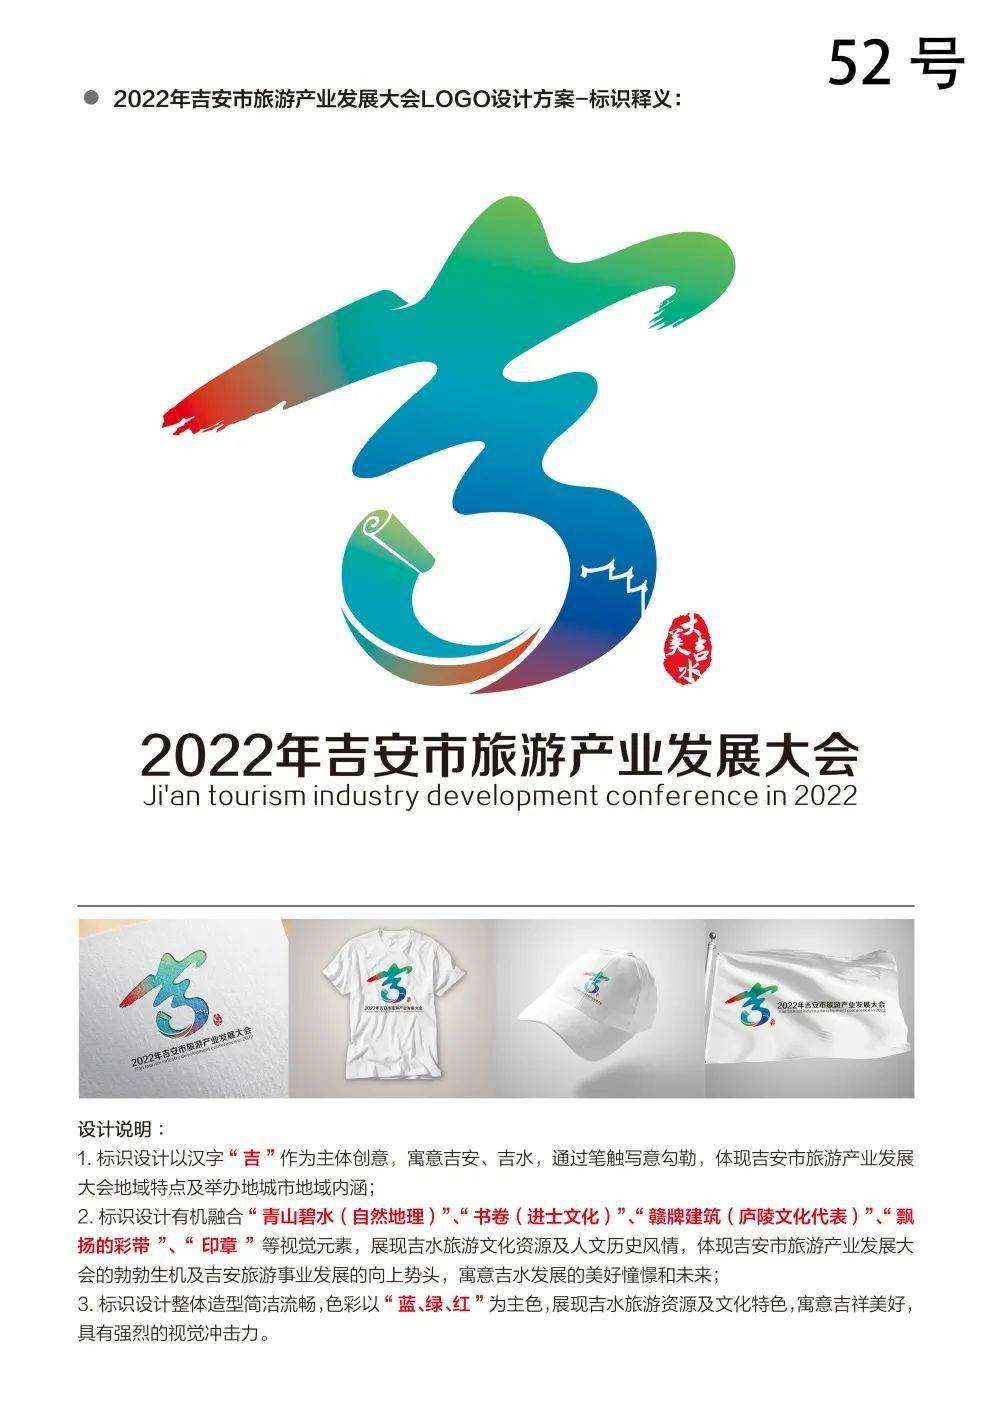 2022年吉安市旅游产业发展大会logo吉祥物惊艳亮相